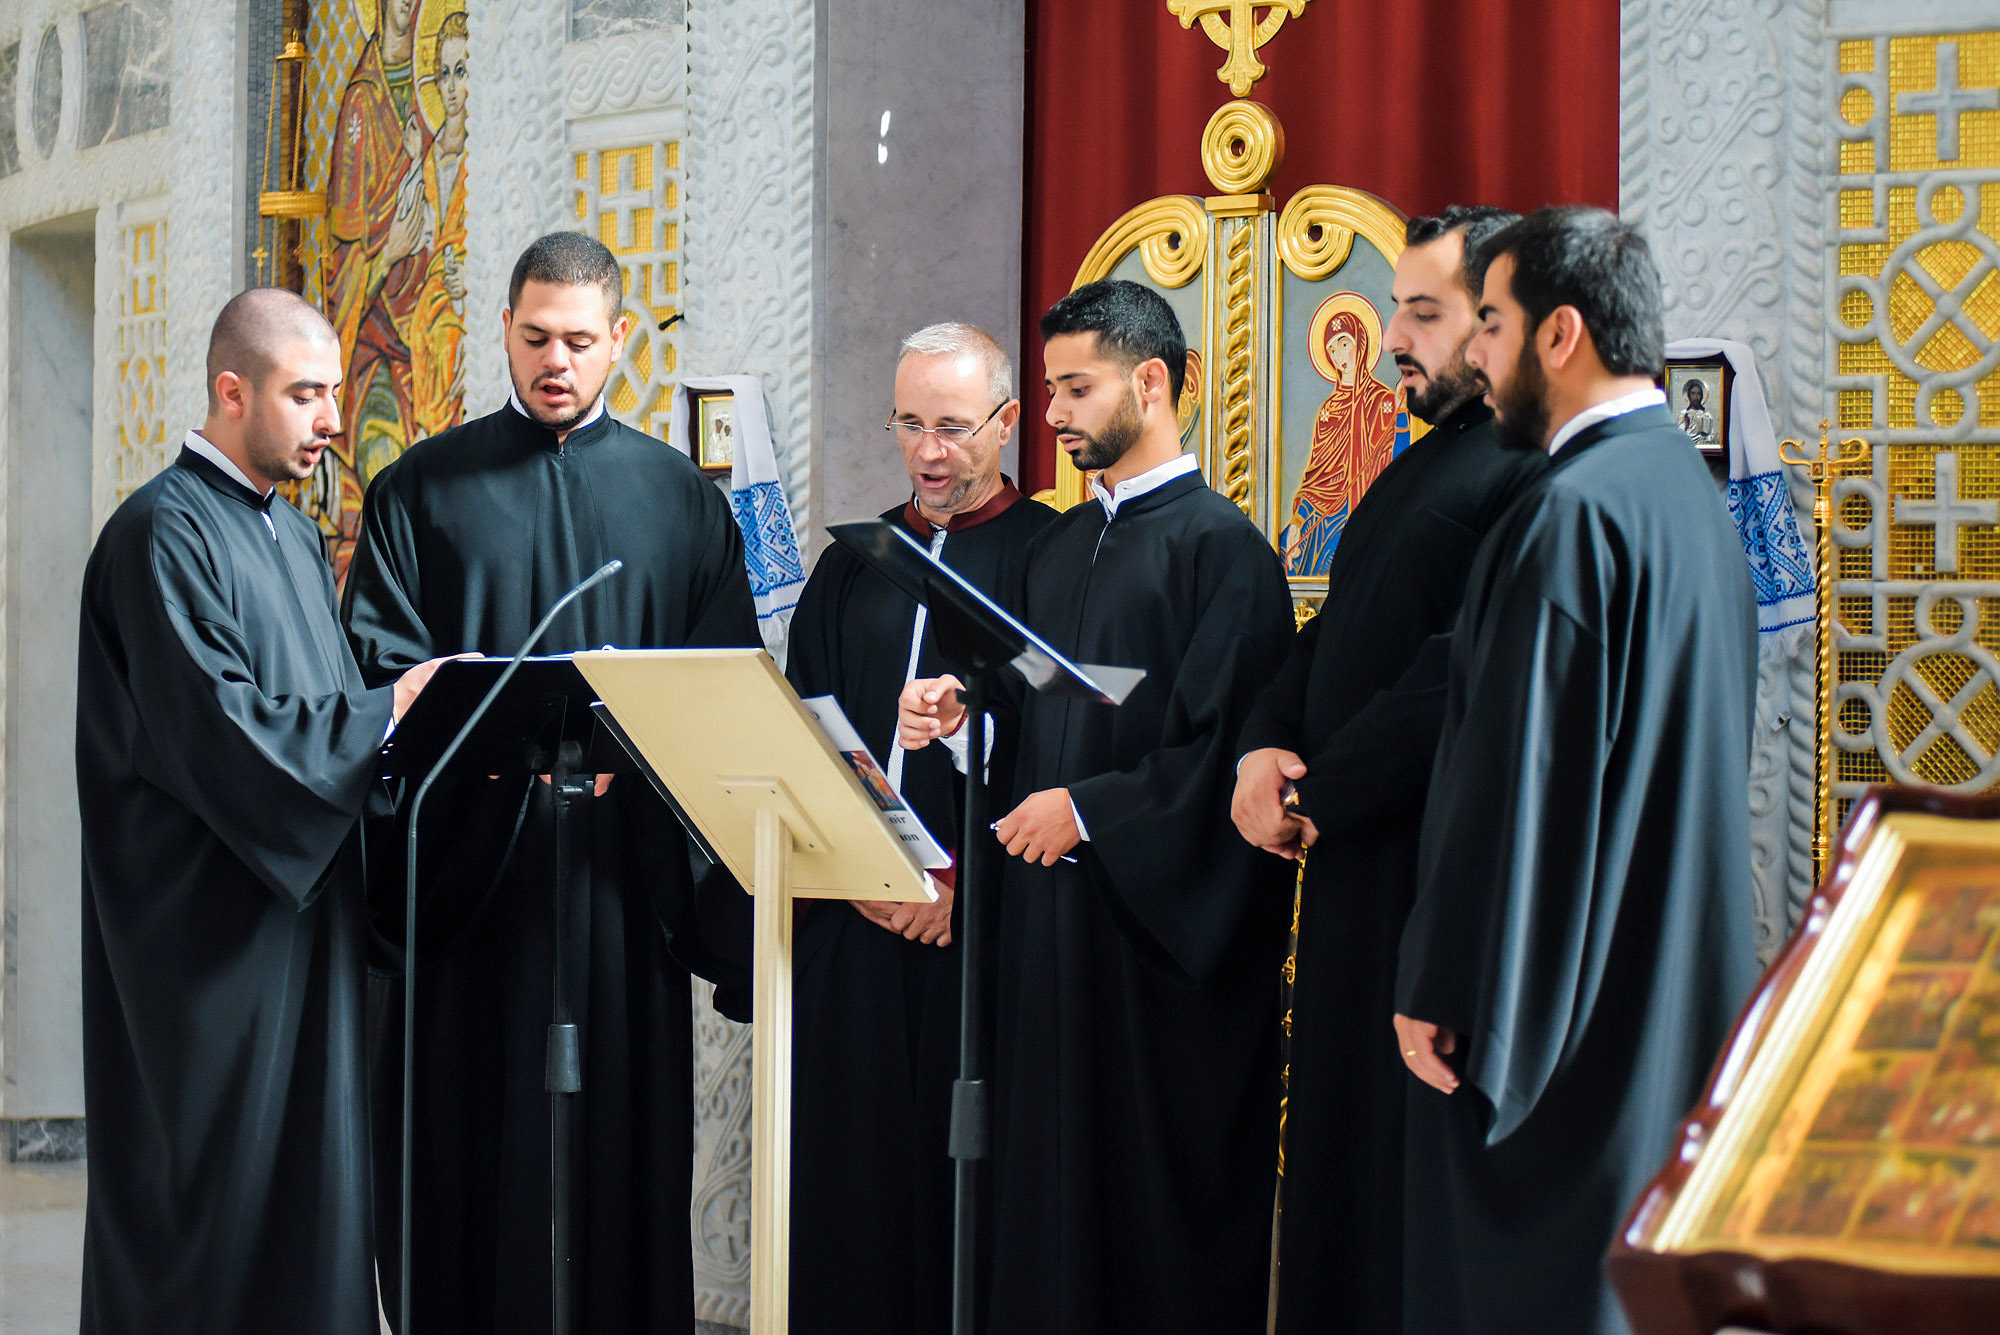 Духівник Фонду зустрівся з колективом хору святого Антонія з міста Дума (Ліван)